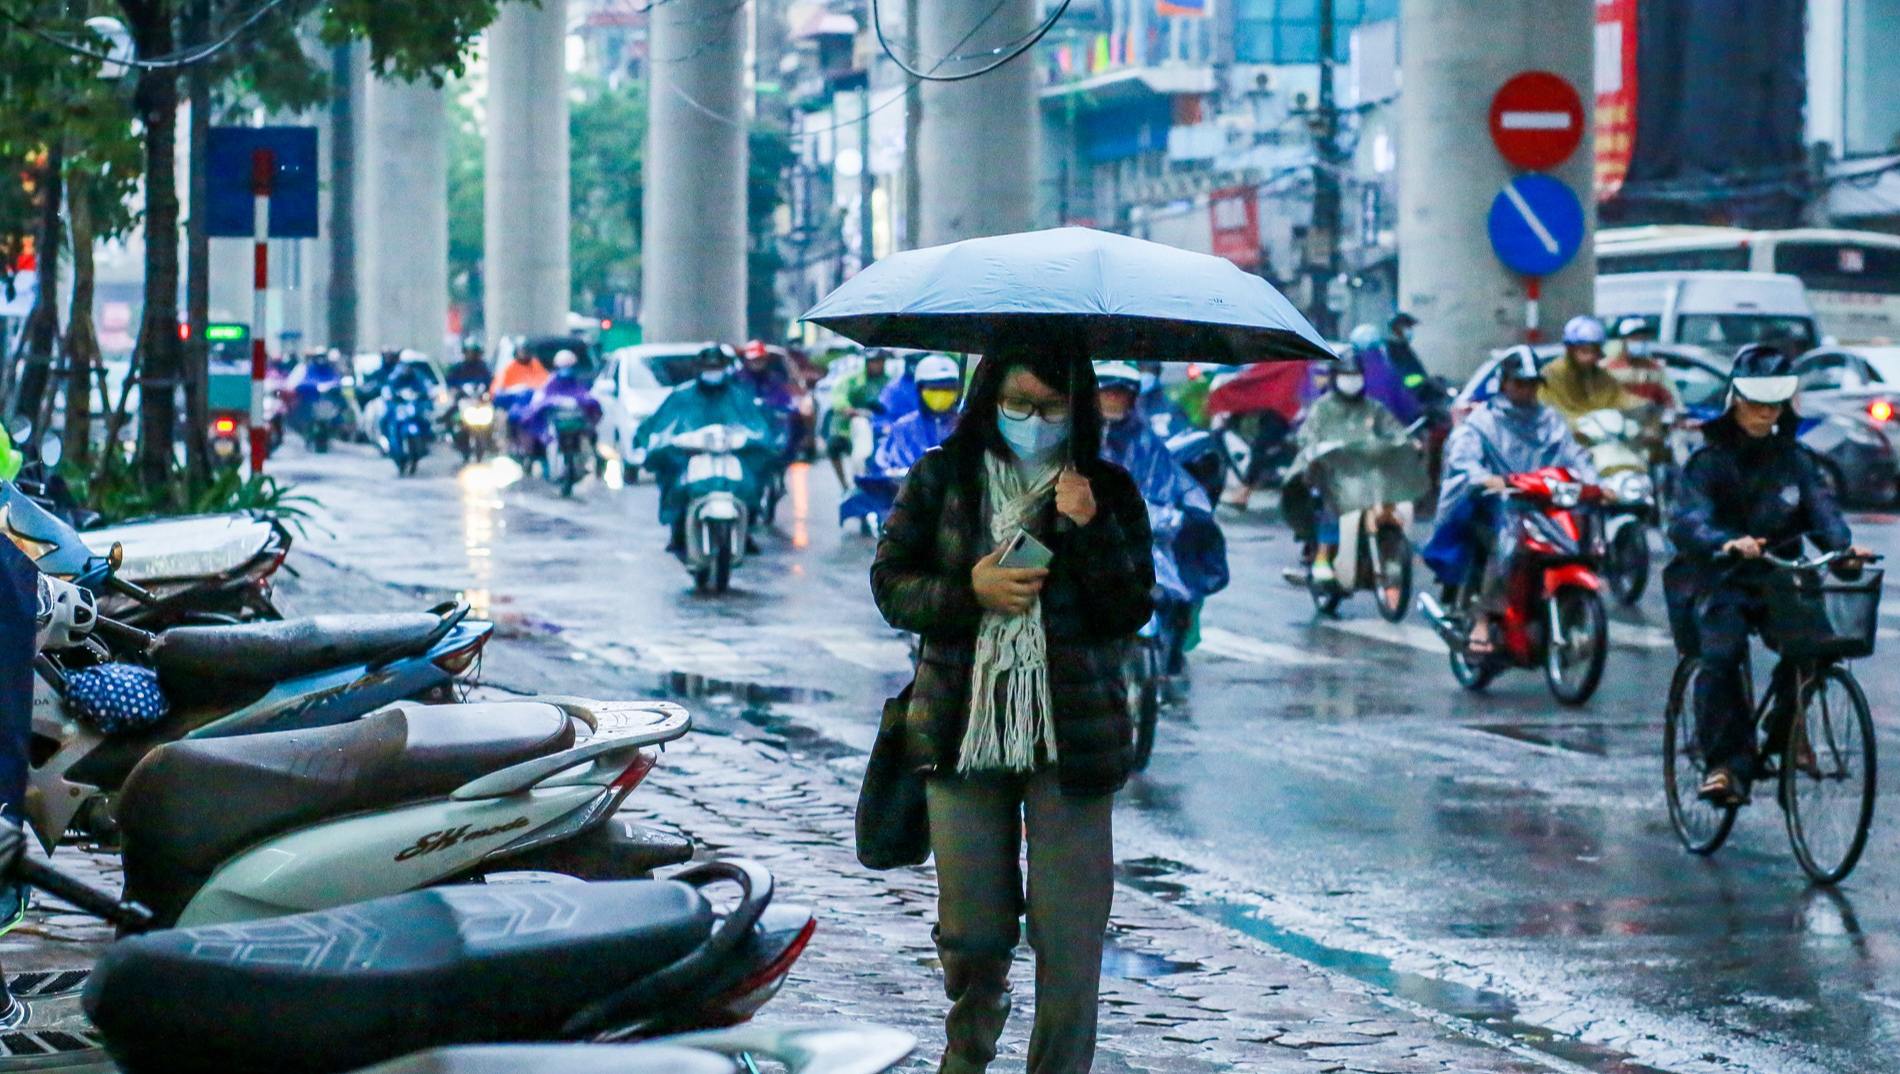 Dự báo thời tiết hôm nay 20/10: Hà Nội vừa mưa vừa lạnh nhất là bao nhiêu độ C? - Ảnh 1.